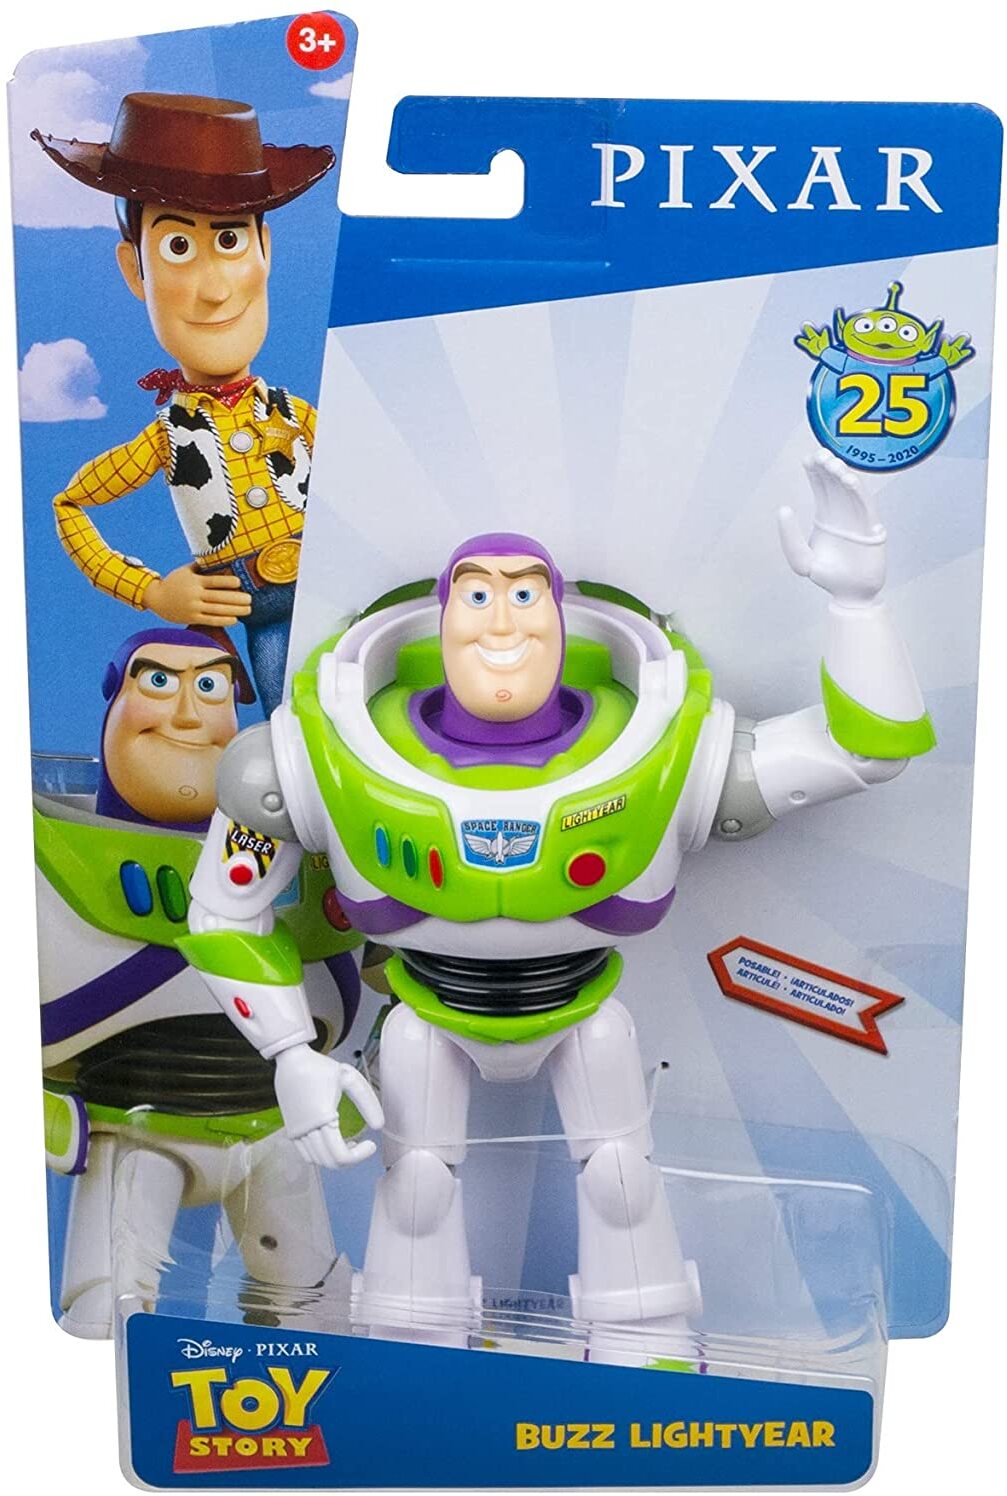 Disney Pixar Toy Story GDP69 - Buzz Lightyear Figur, 18 cm, Spielzeug Actionfigur, tolles Geschenk für Sammler und Kinder ab 3 J